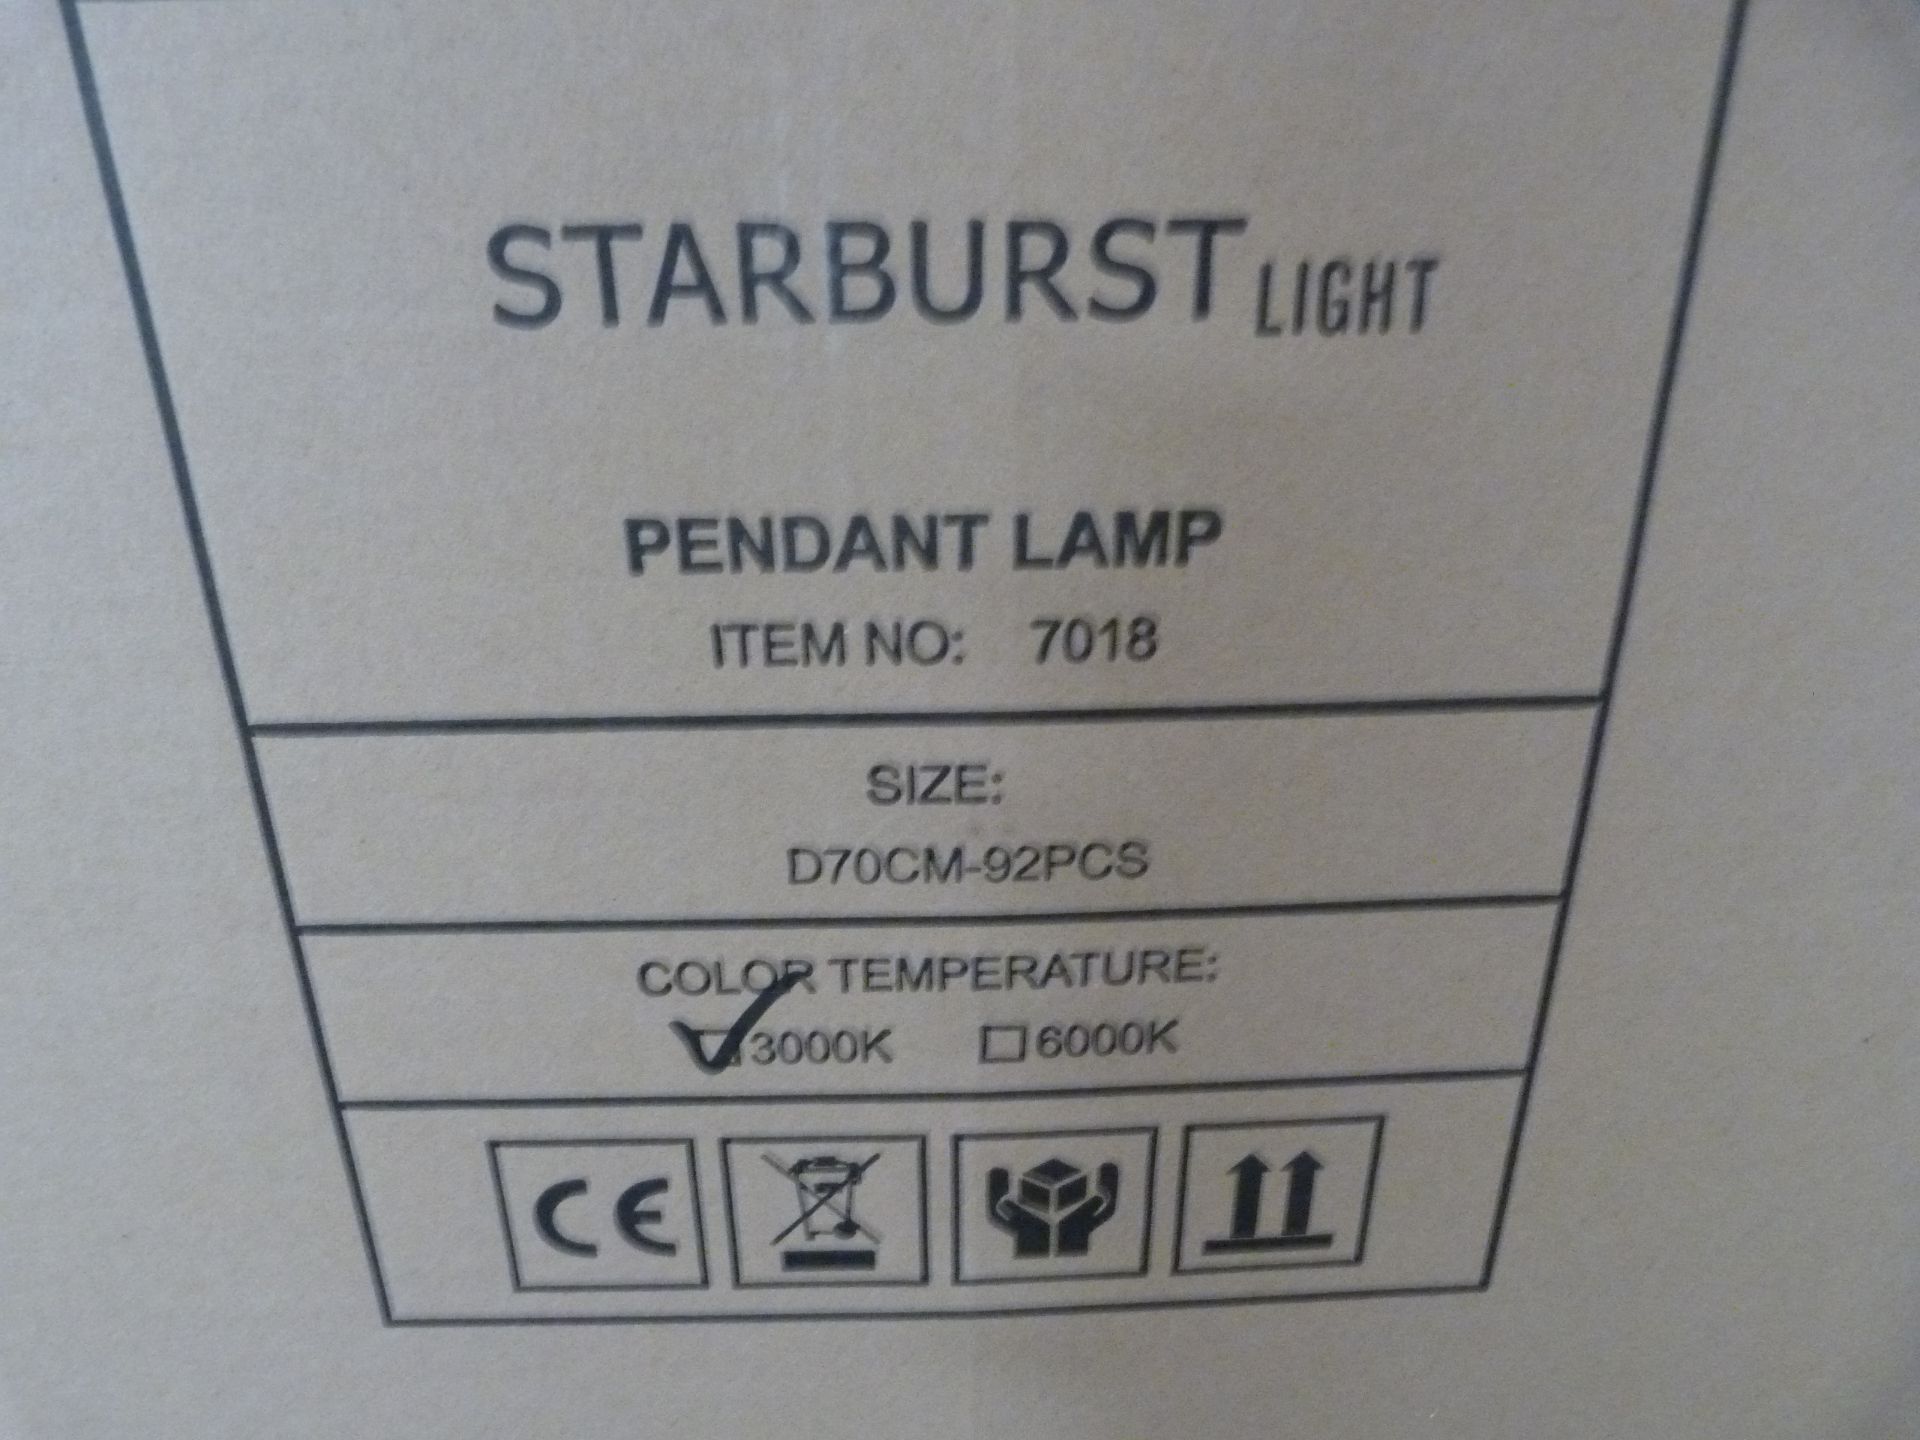 *Starburst Pendant Lamp 7018 - Image 2 of 2